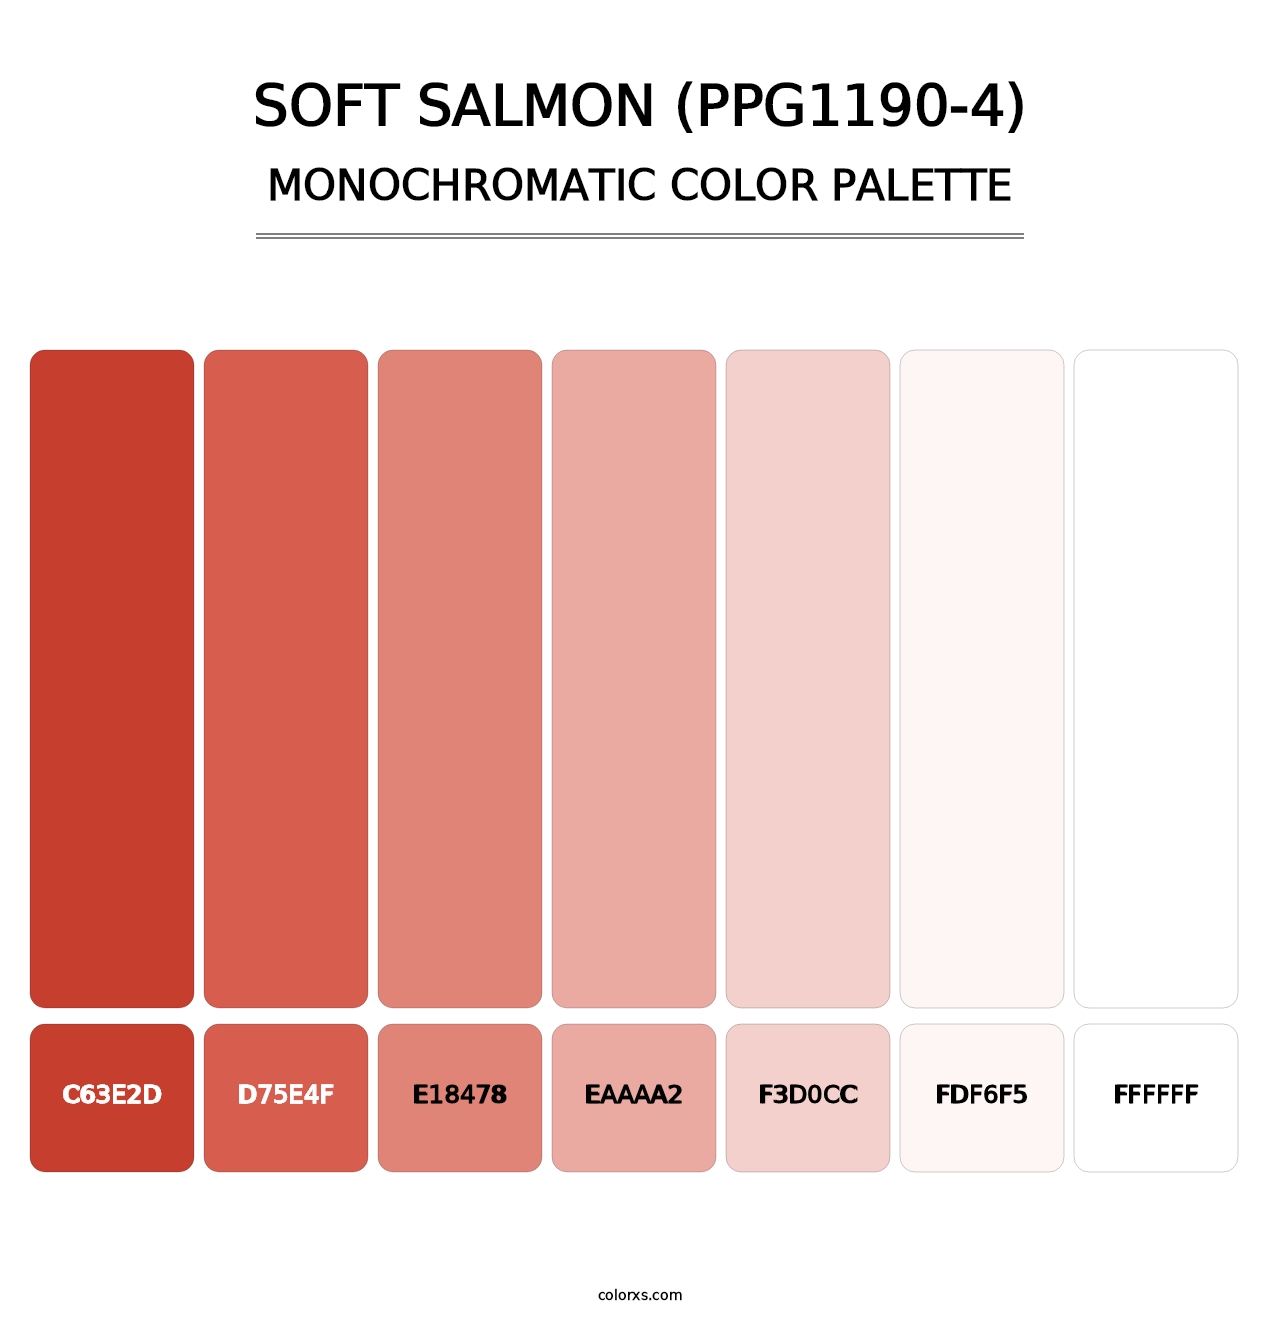 Soft Salmon (PPG1190-4) - Monochromatic Color Palette